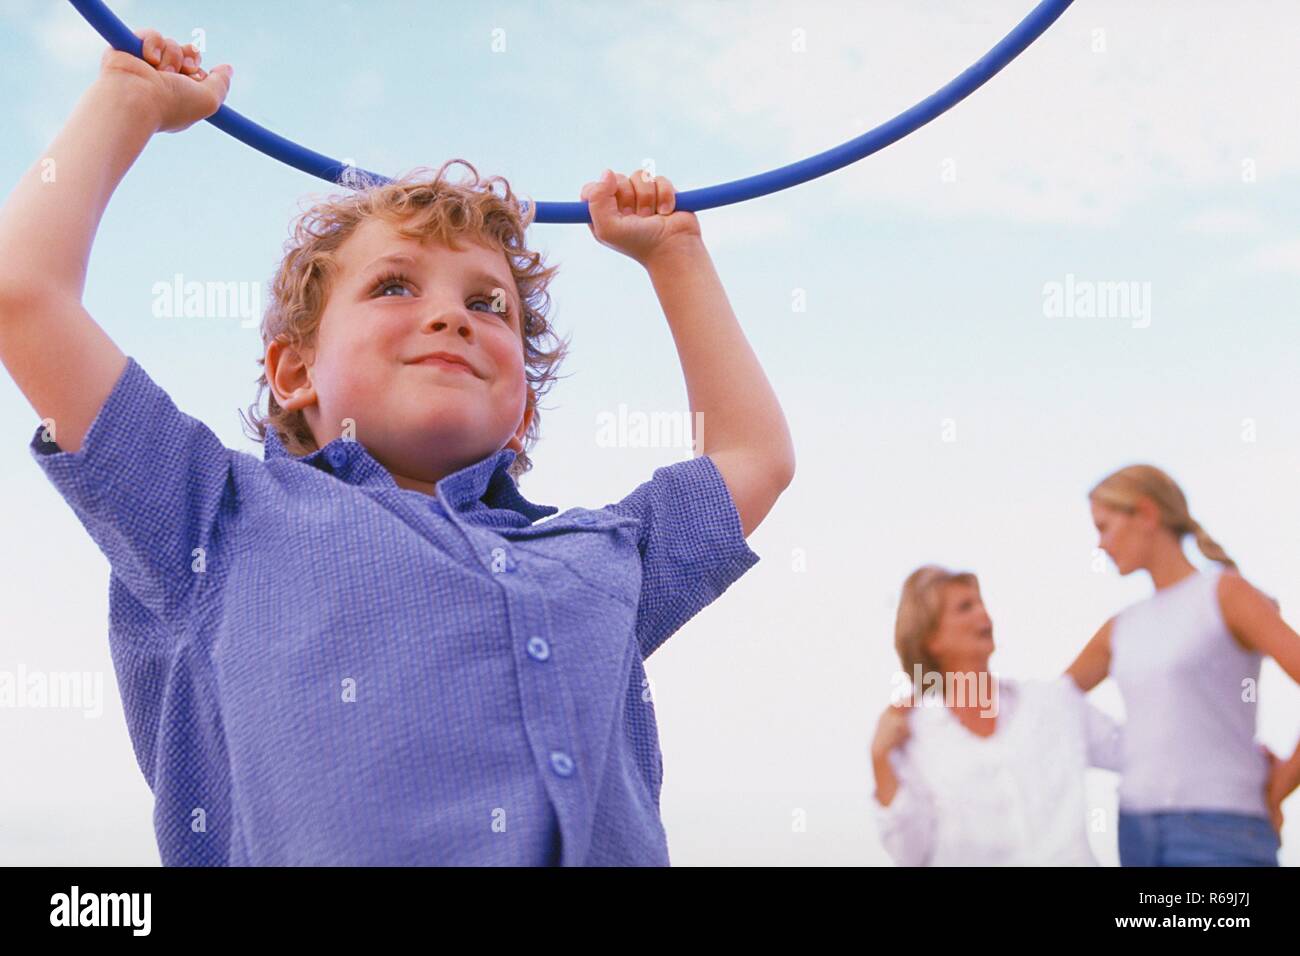 Strandszene, Portrait, Halbfigur, Junge, 5 Jahre, bekleidet-blau mit kariertem Hemd weiss, spielt mit blauen Gymnastik Reifen am Strand Banque D'Images